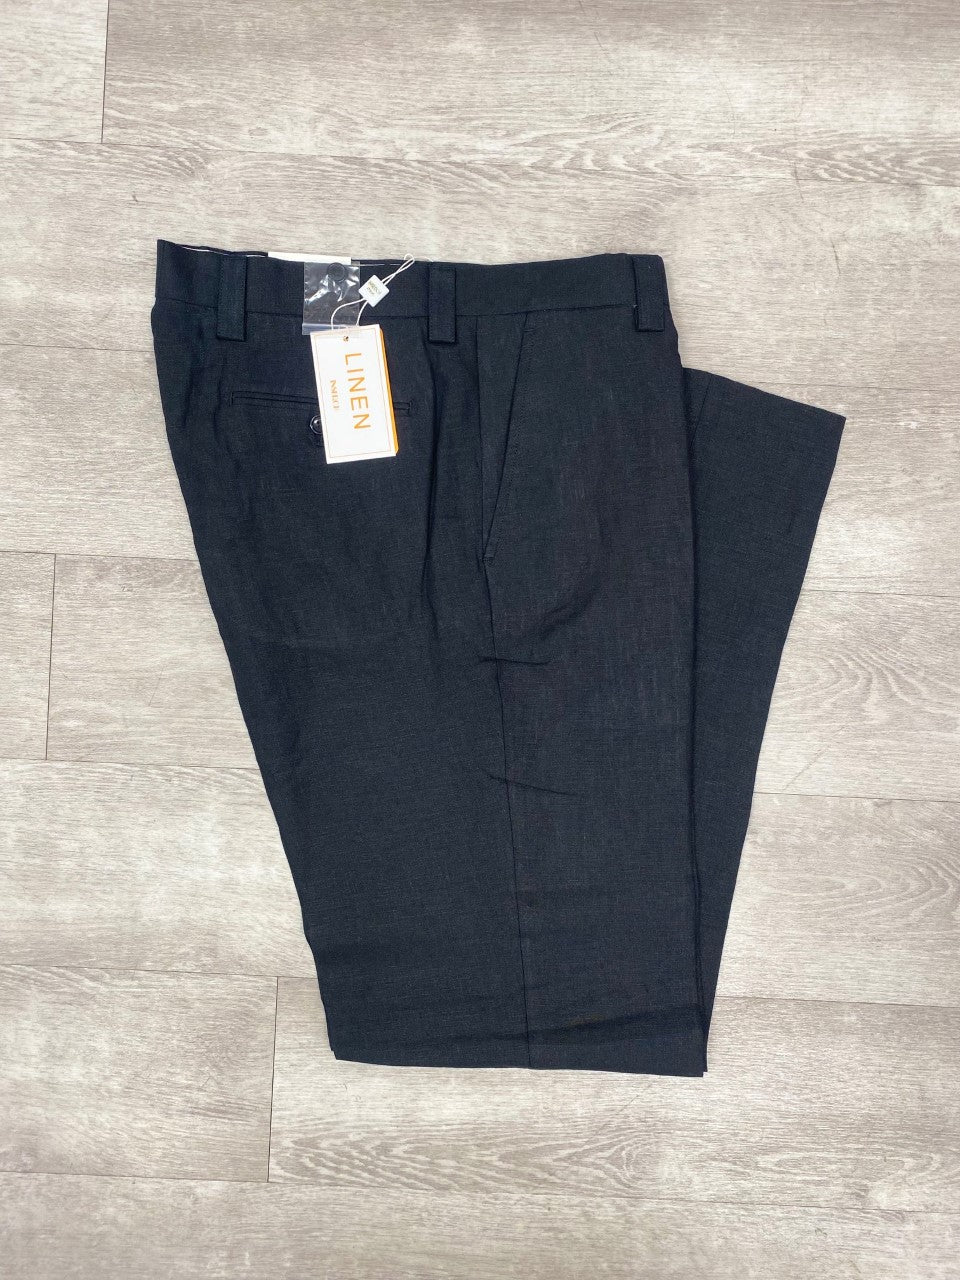 Inserch Premium Linen Flat Front Pants P3116 Black